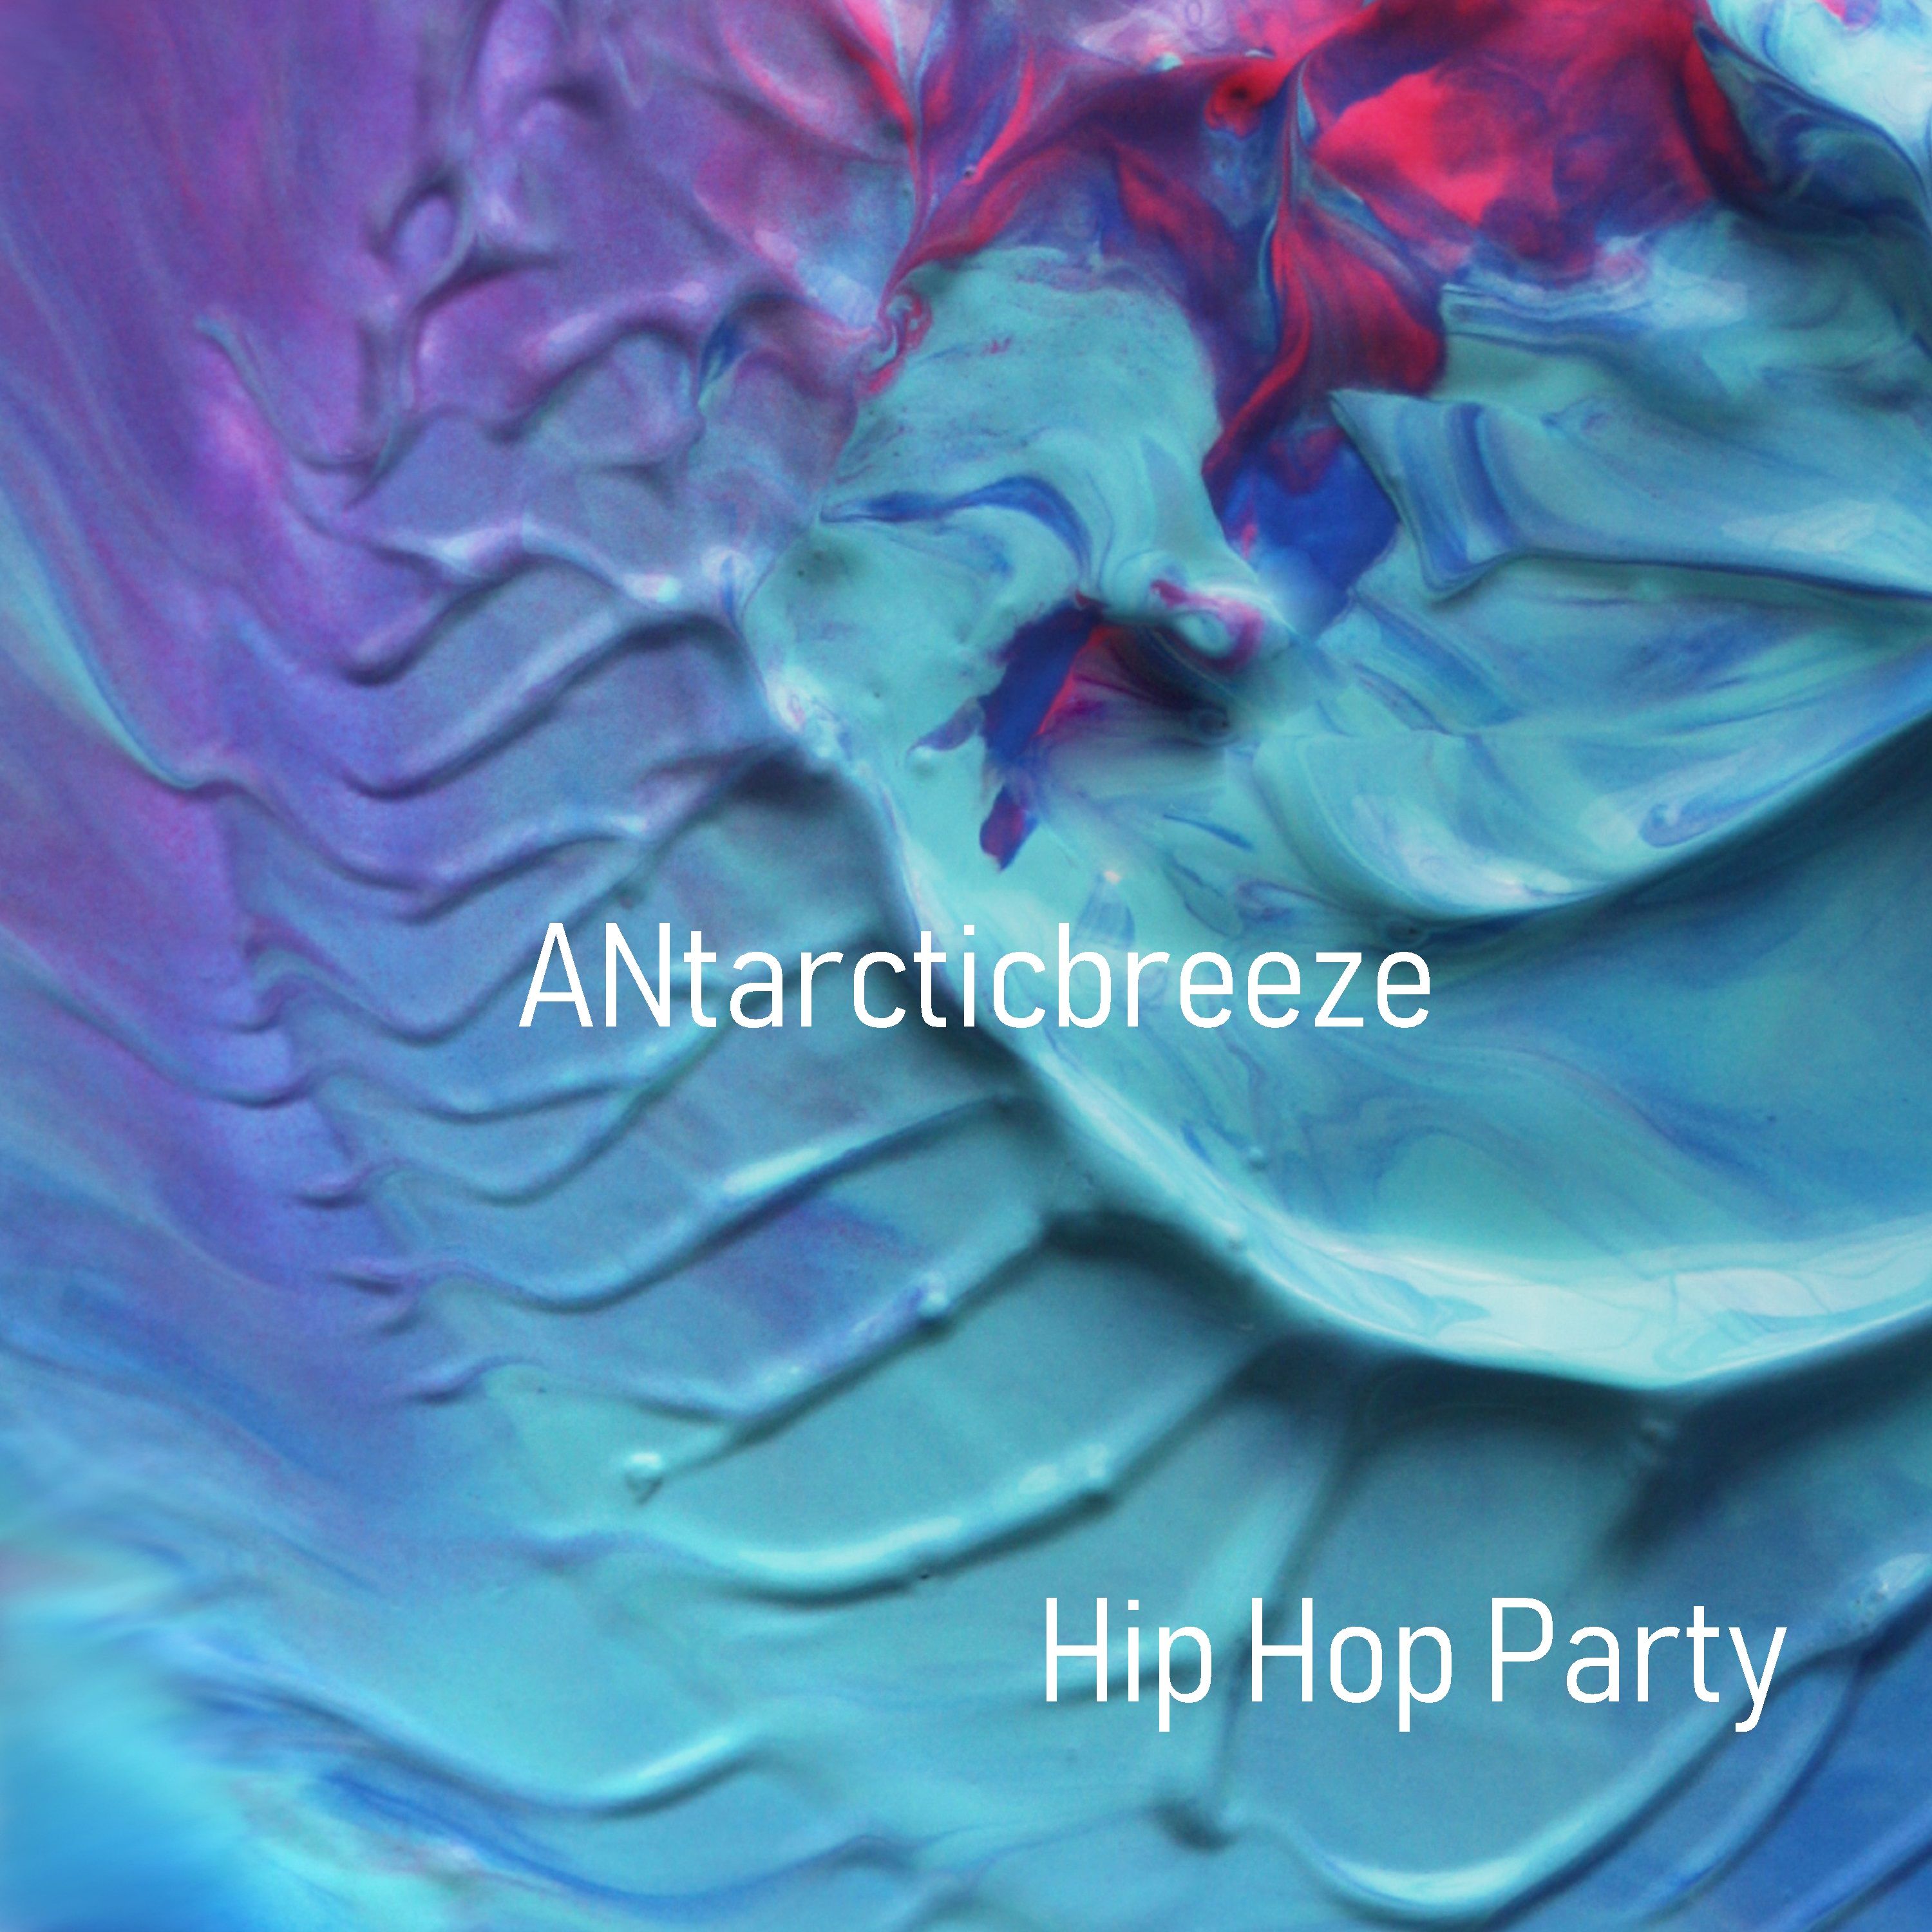 下载 Hip Hop Party - Positive (Unlimit Use Music) by ANtarcticbreeze